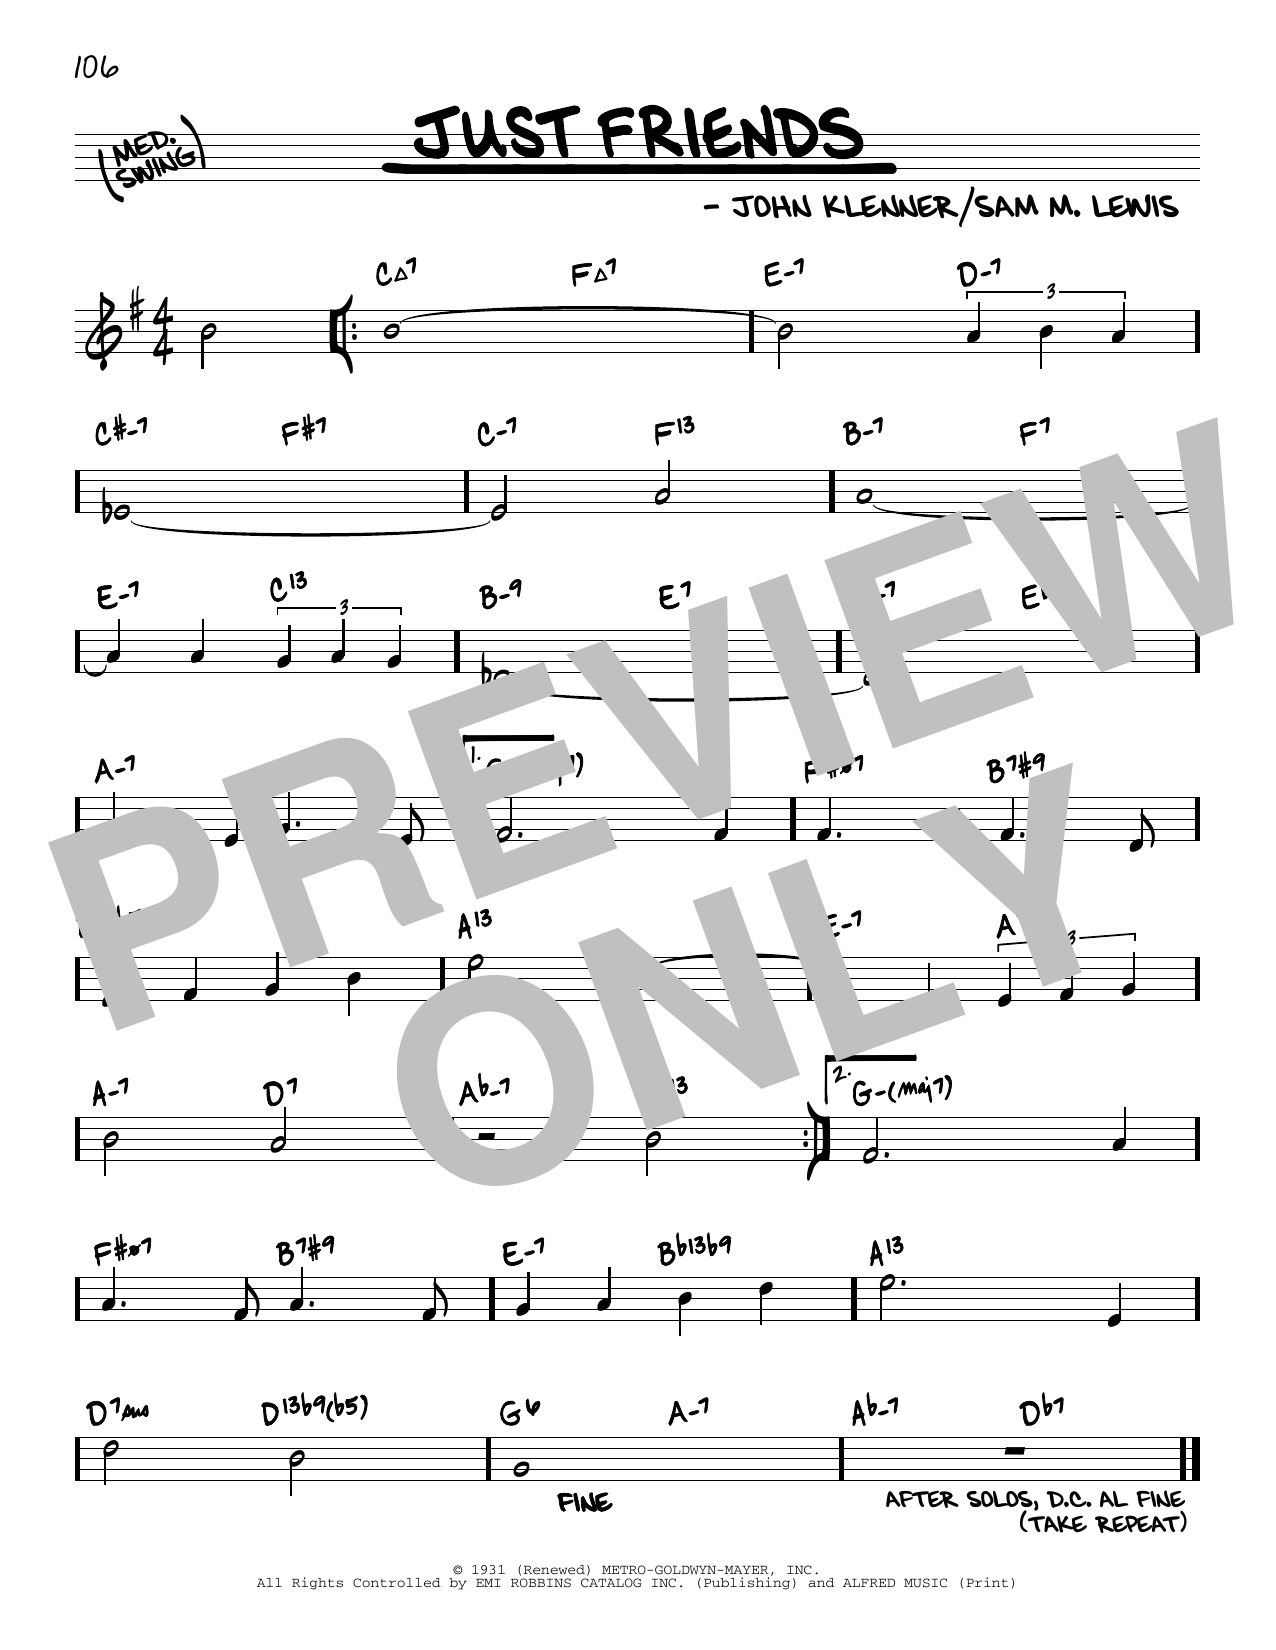 John Klenner Just Friends (arr. David Hazeltine) Sheet Music Notes & Chords for Real Book – Enhanced Chords - Download or Print PDF